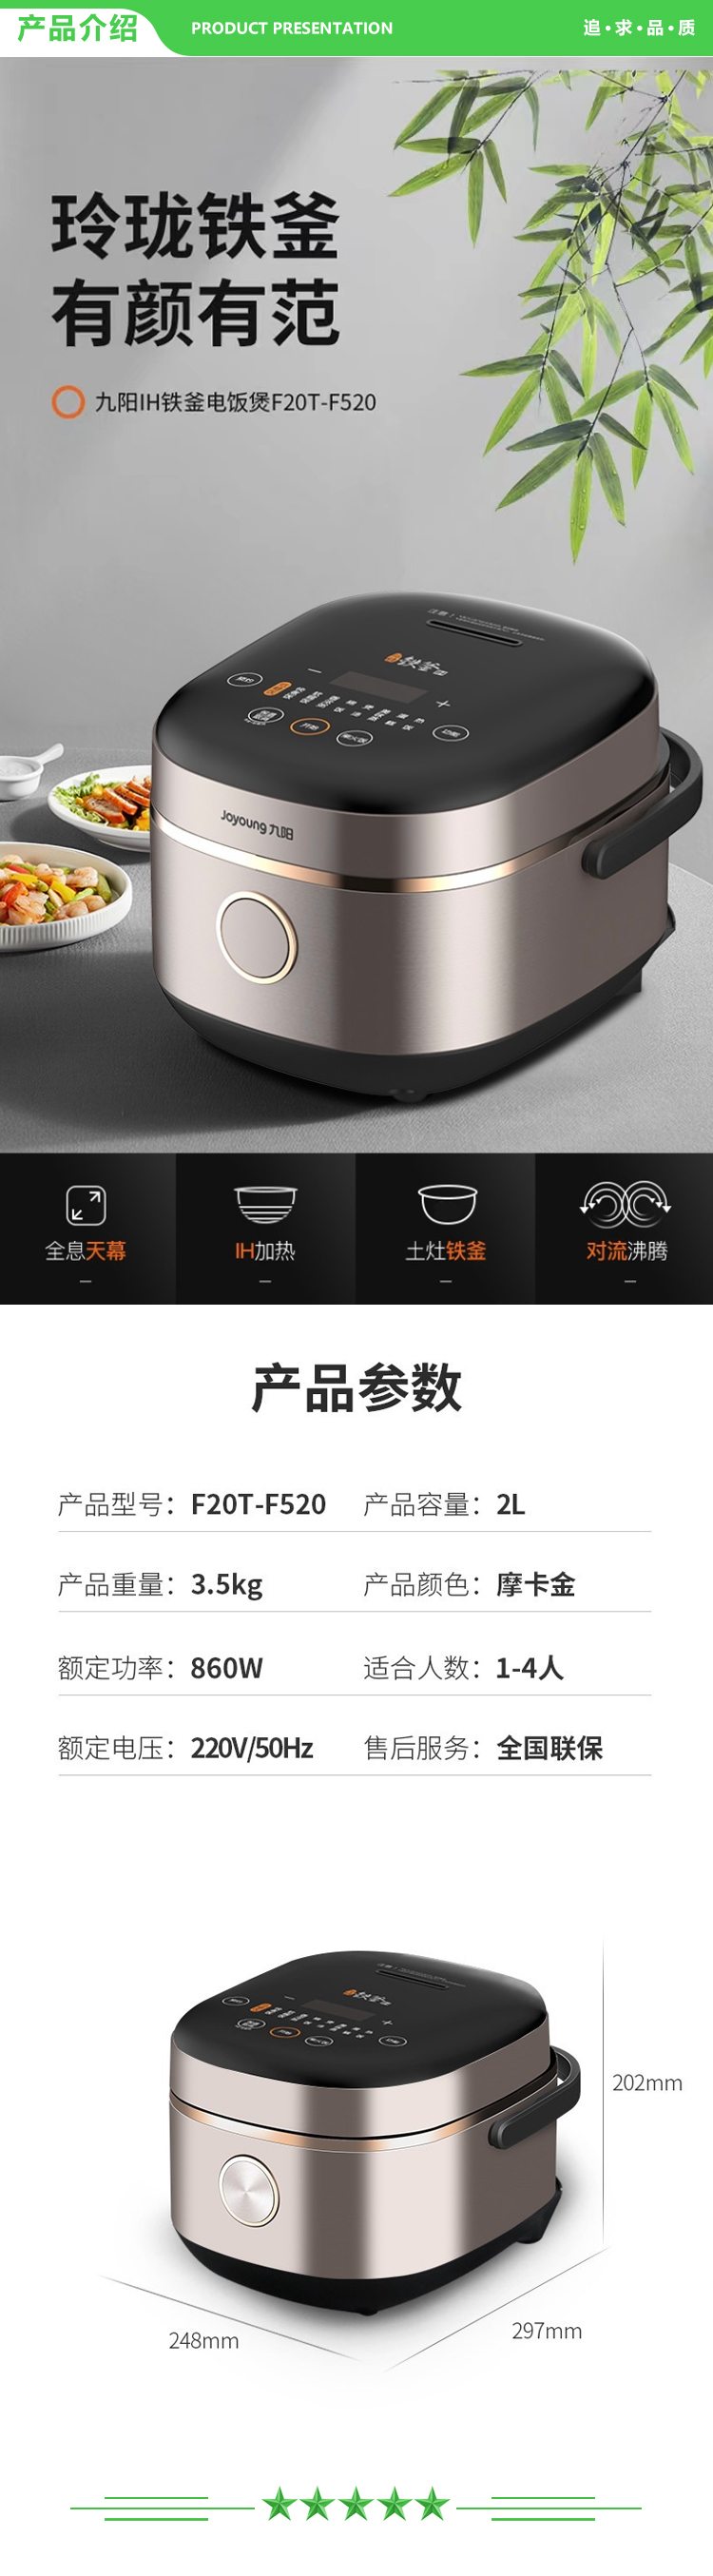 九阳 Joyoung F20T-F520 电饭锅 电磁加热电饭锅 2.jpg